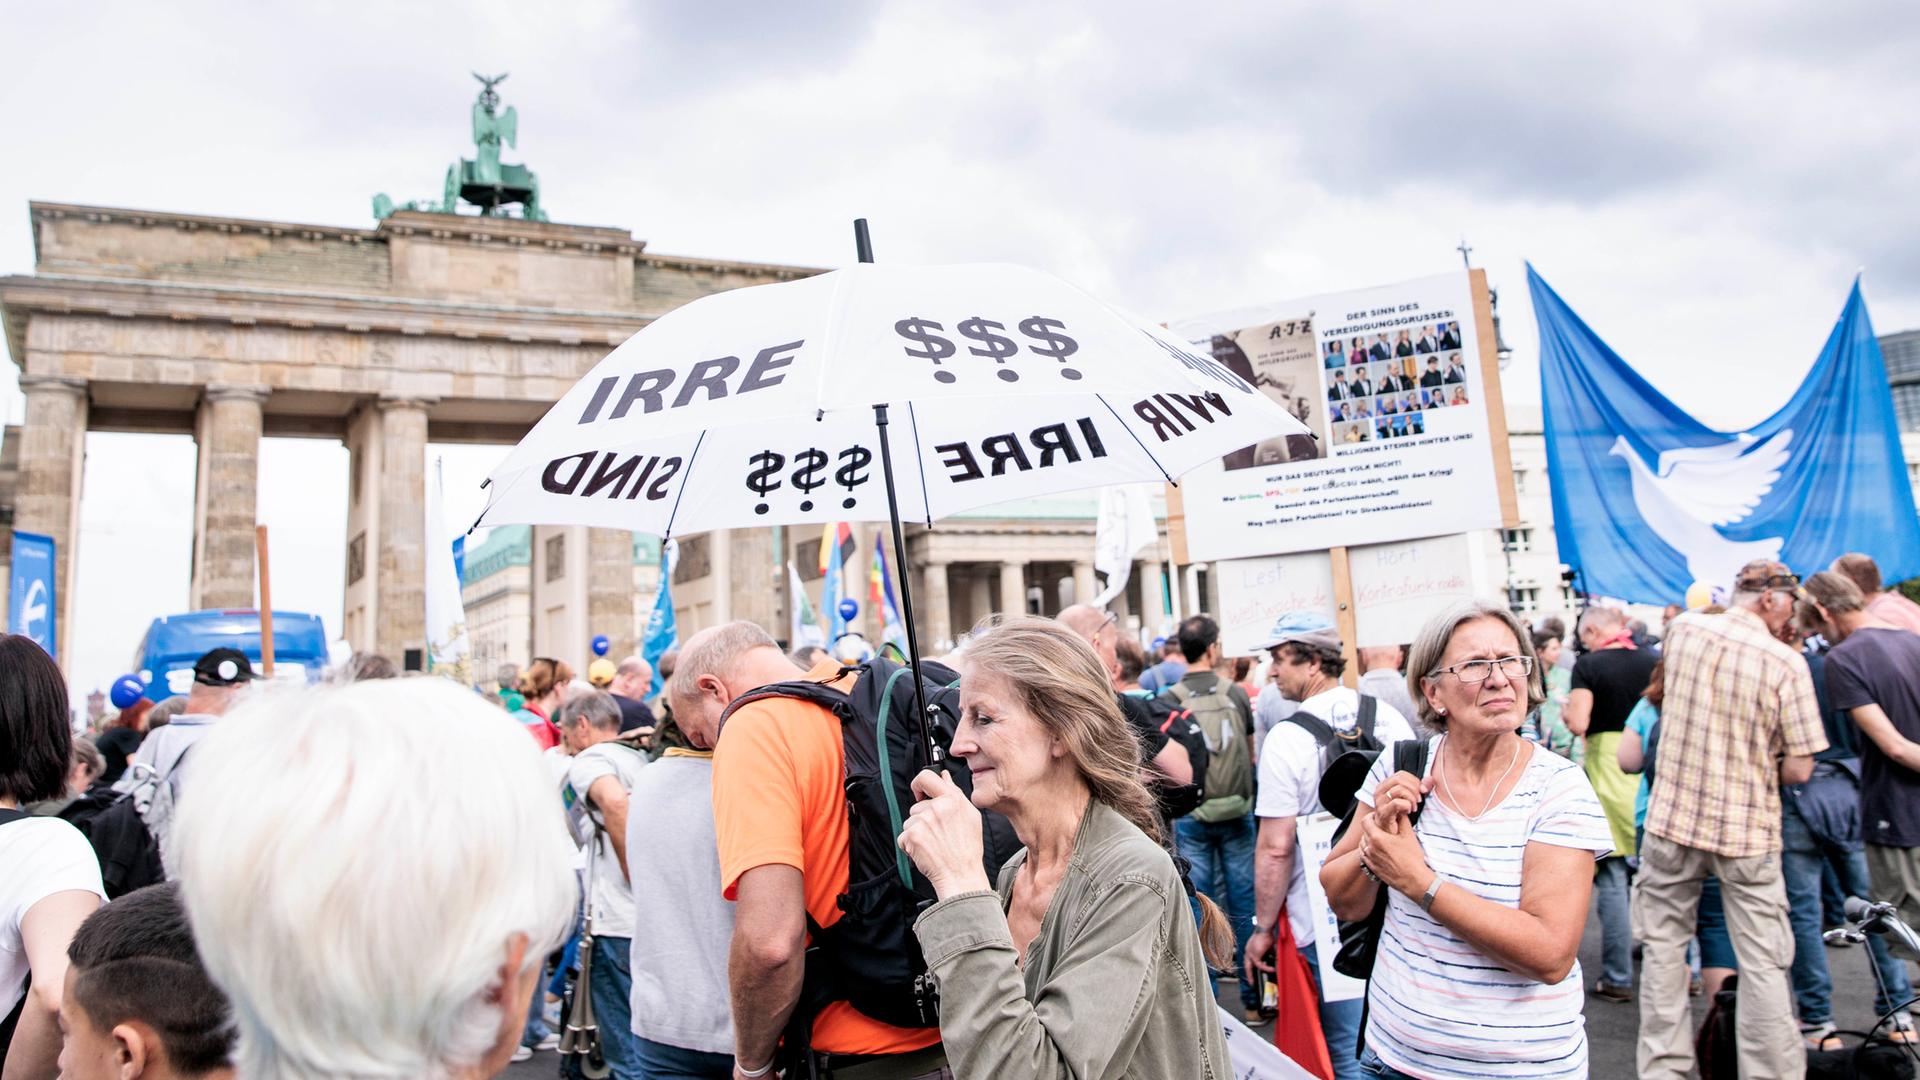 Teilnehmer einer Kundgebung der Initiative "Wir sind Viele" demonstrieren vor dem Brandenburger Tor in Berlin.